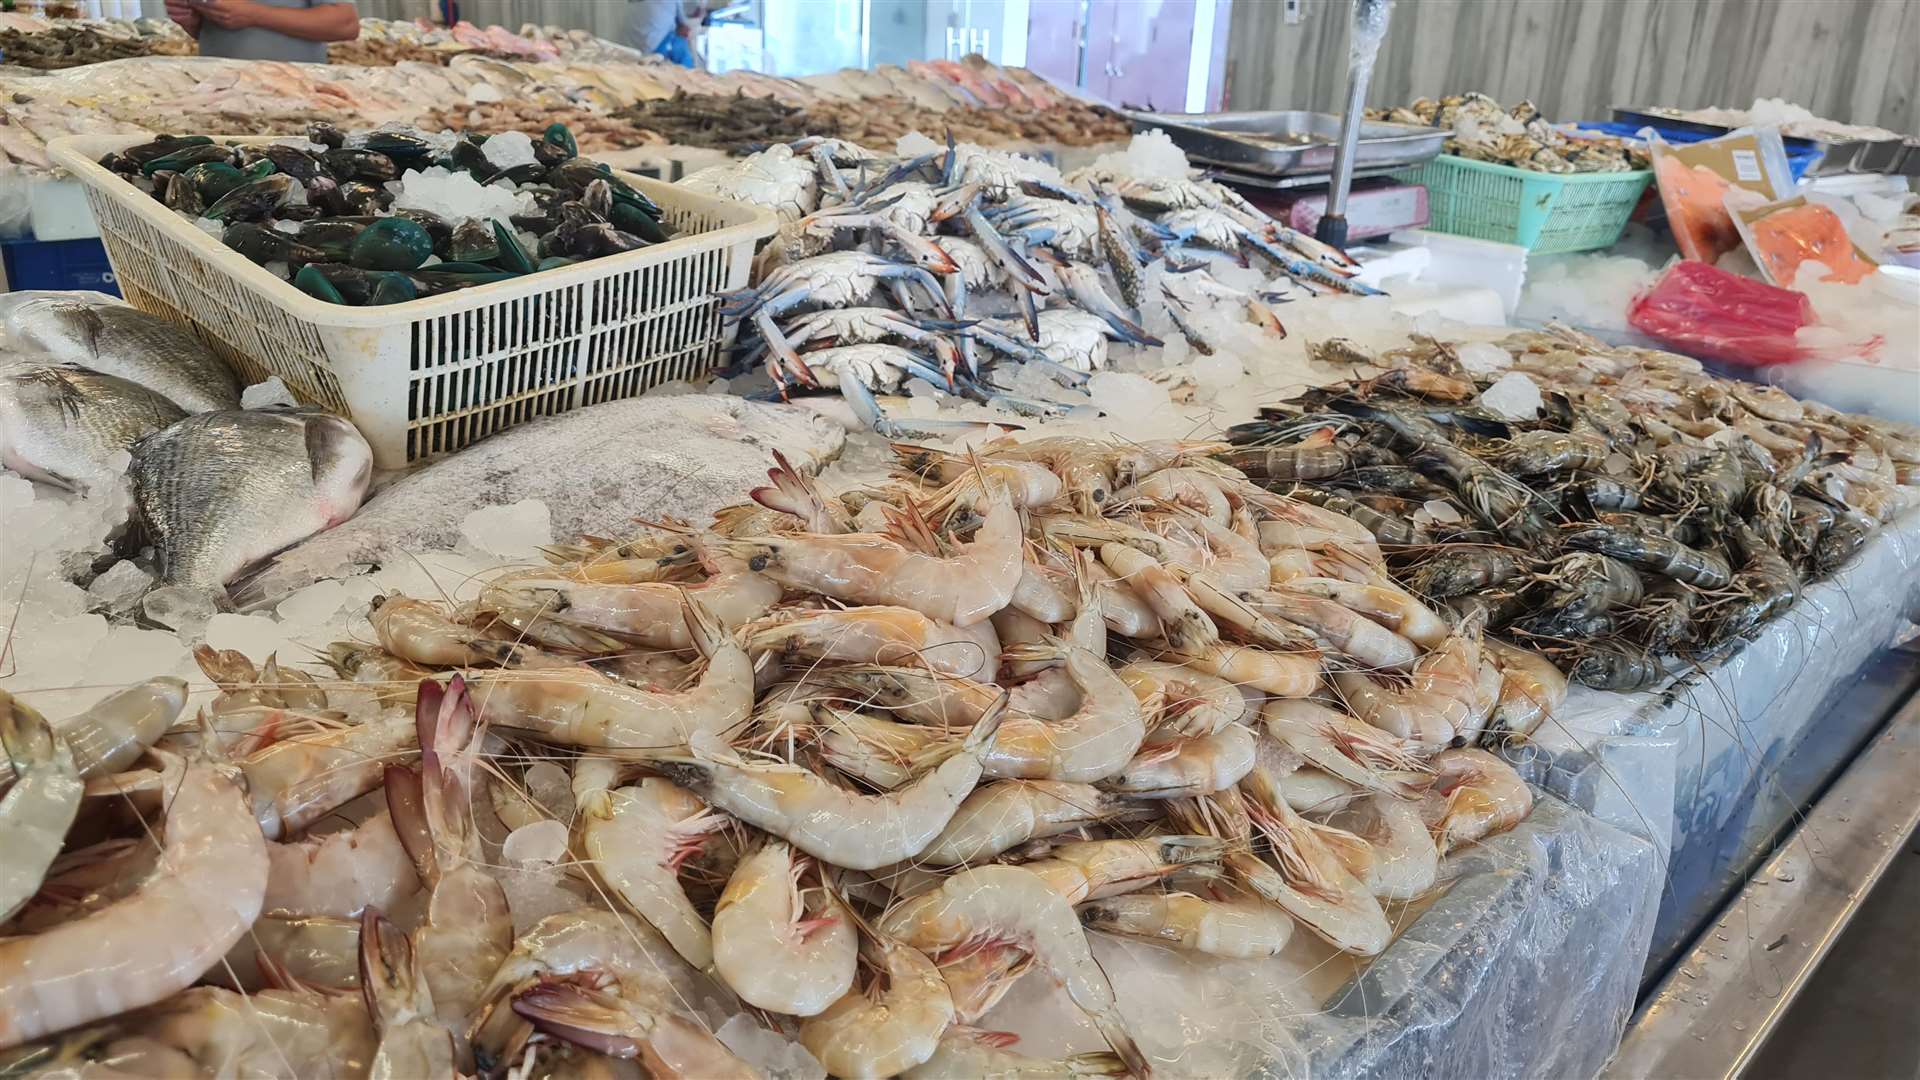 The Souq Al Bahar fish market in Jumeiriah